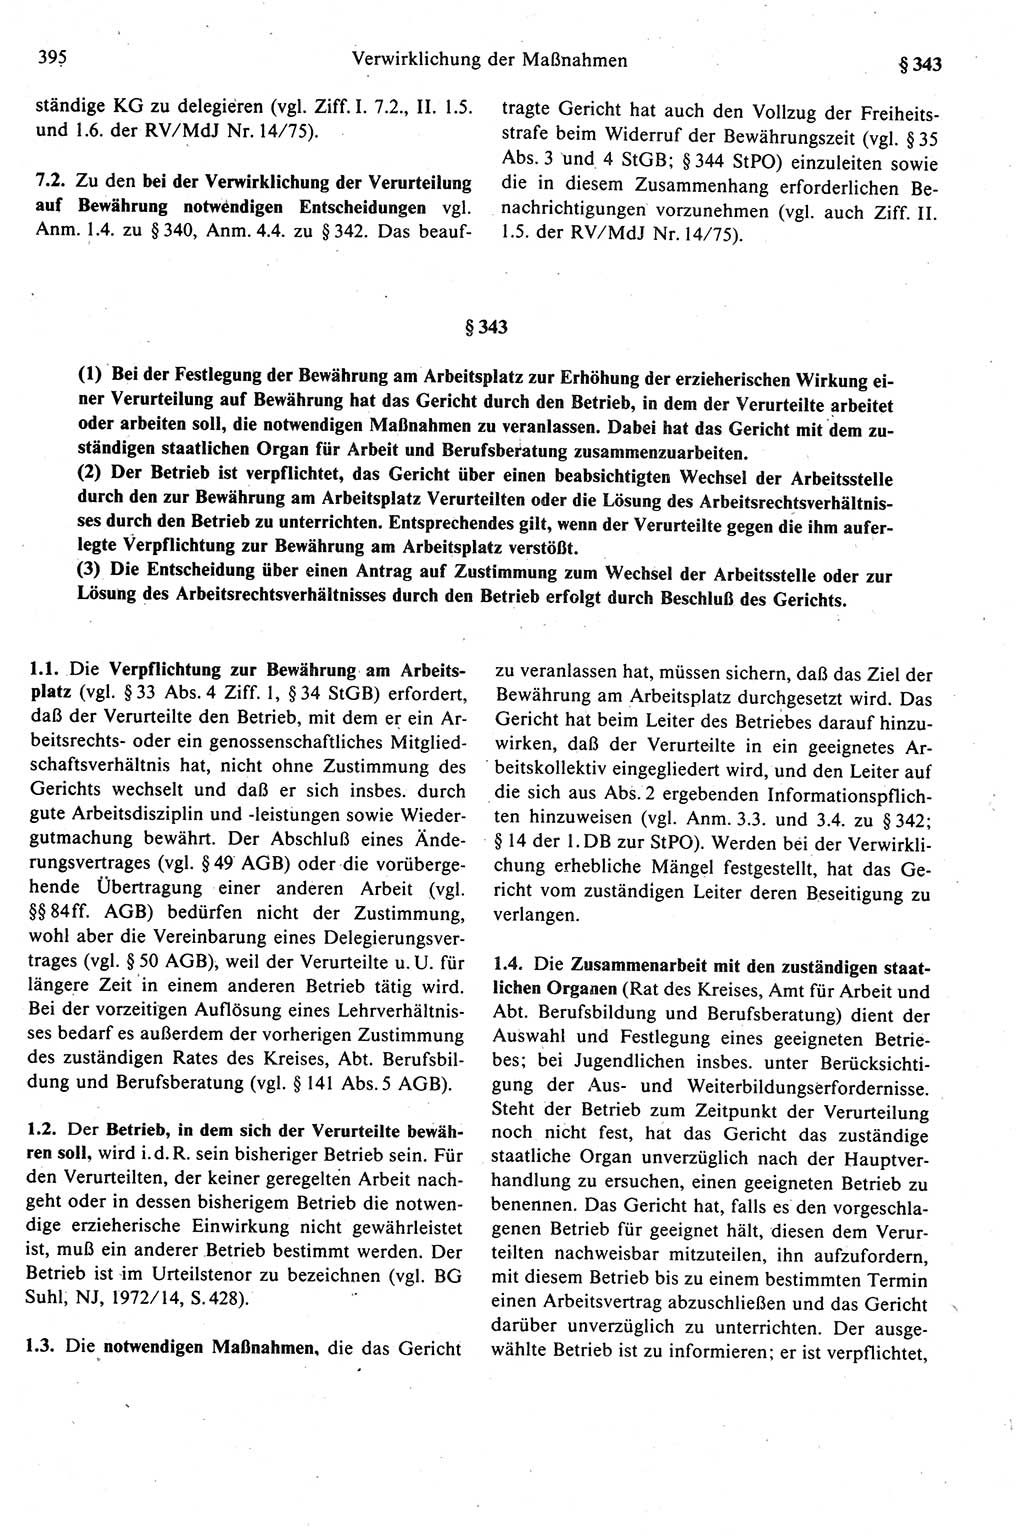 Strafprozeßrecht der DDR (Deutsche Demokratische Republik), Kommentar zur Strafprozeßordnung (StPO) 1989, Seite 395 (Strafprozeßr. DDR Komm. StPO 1989, S. 395)